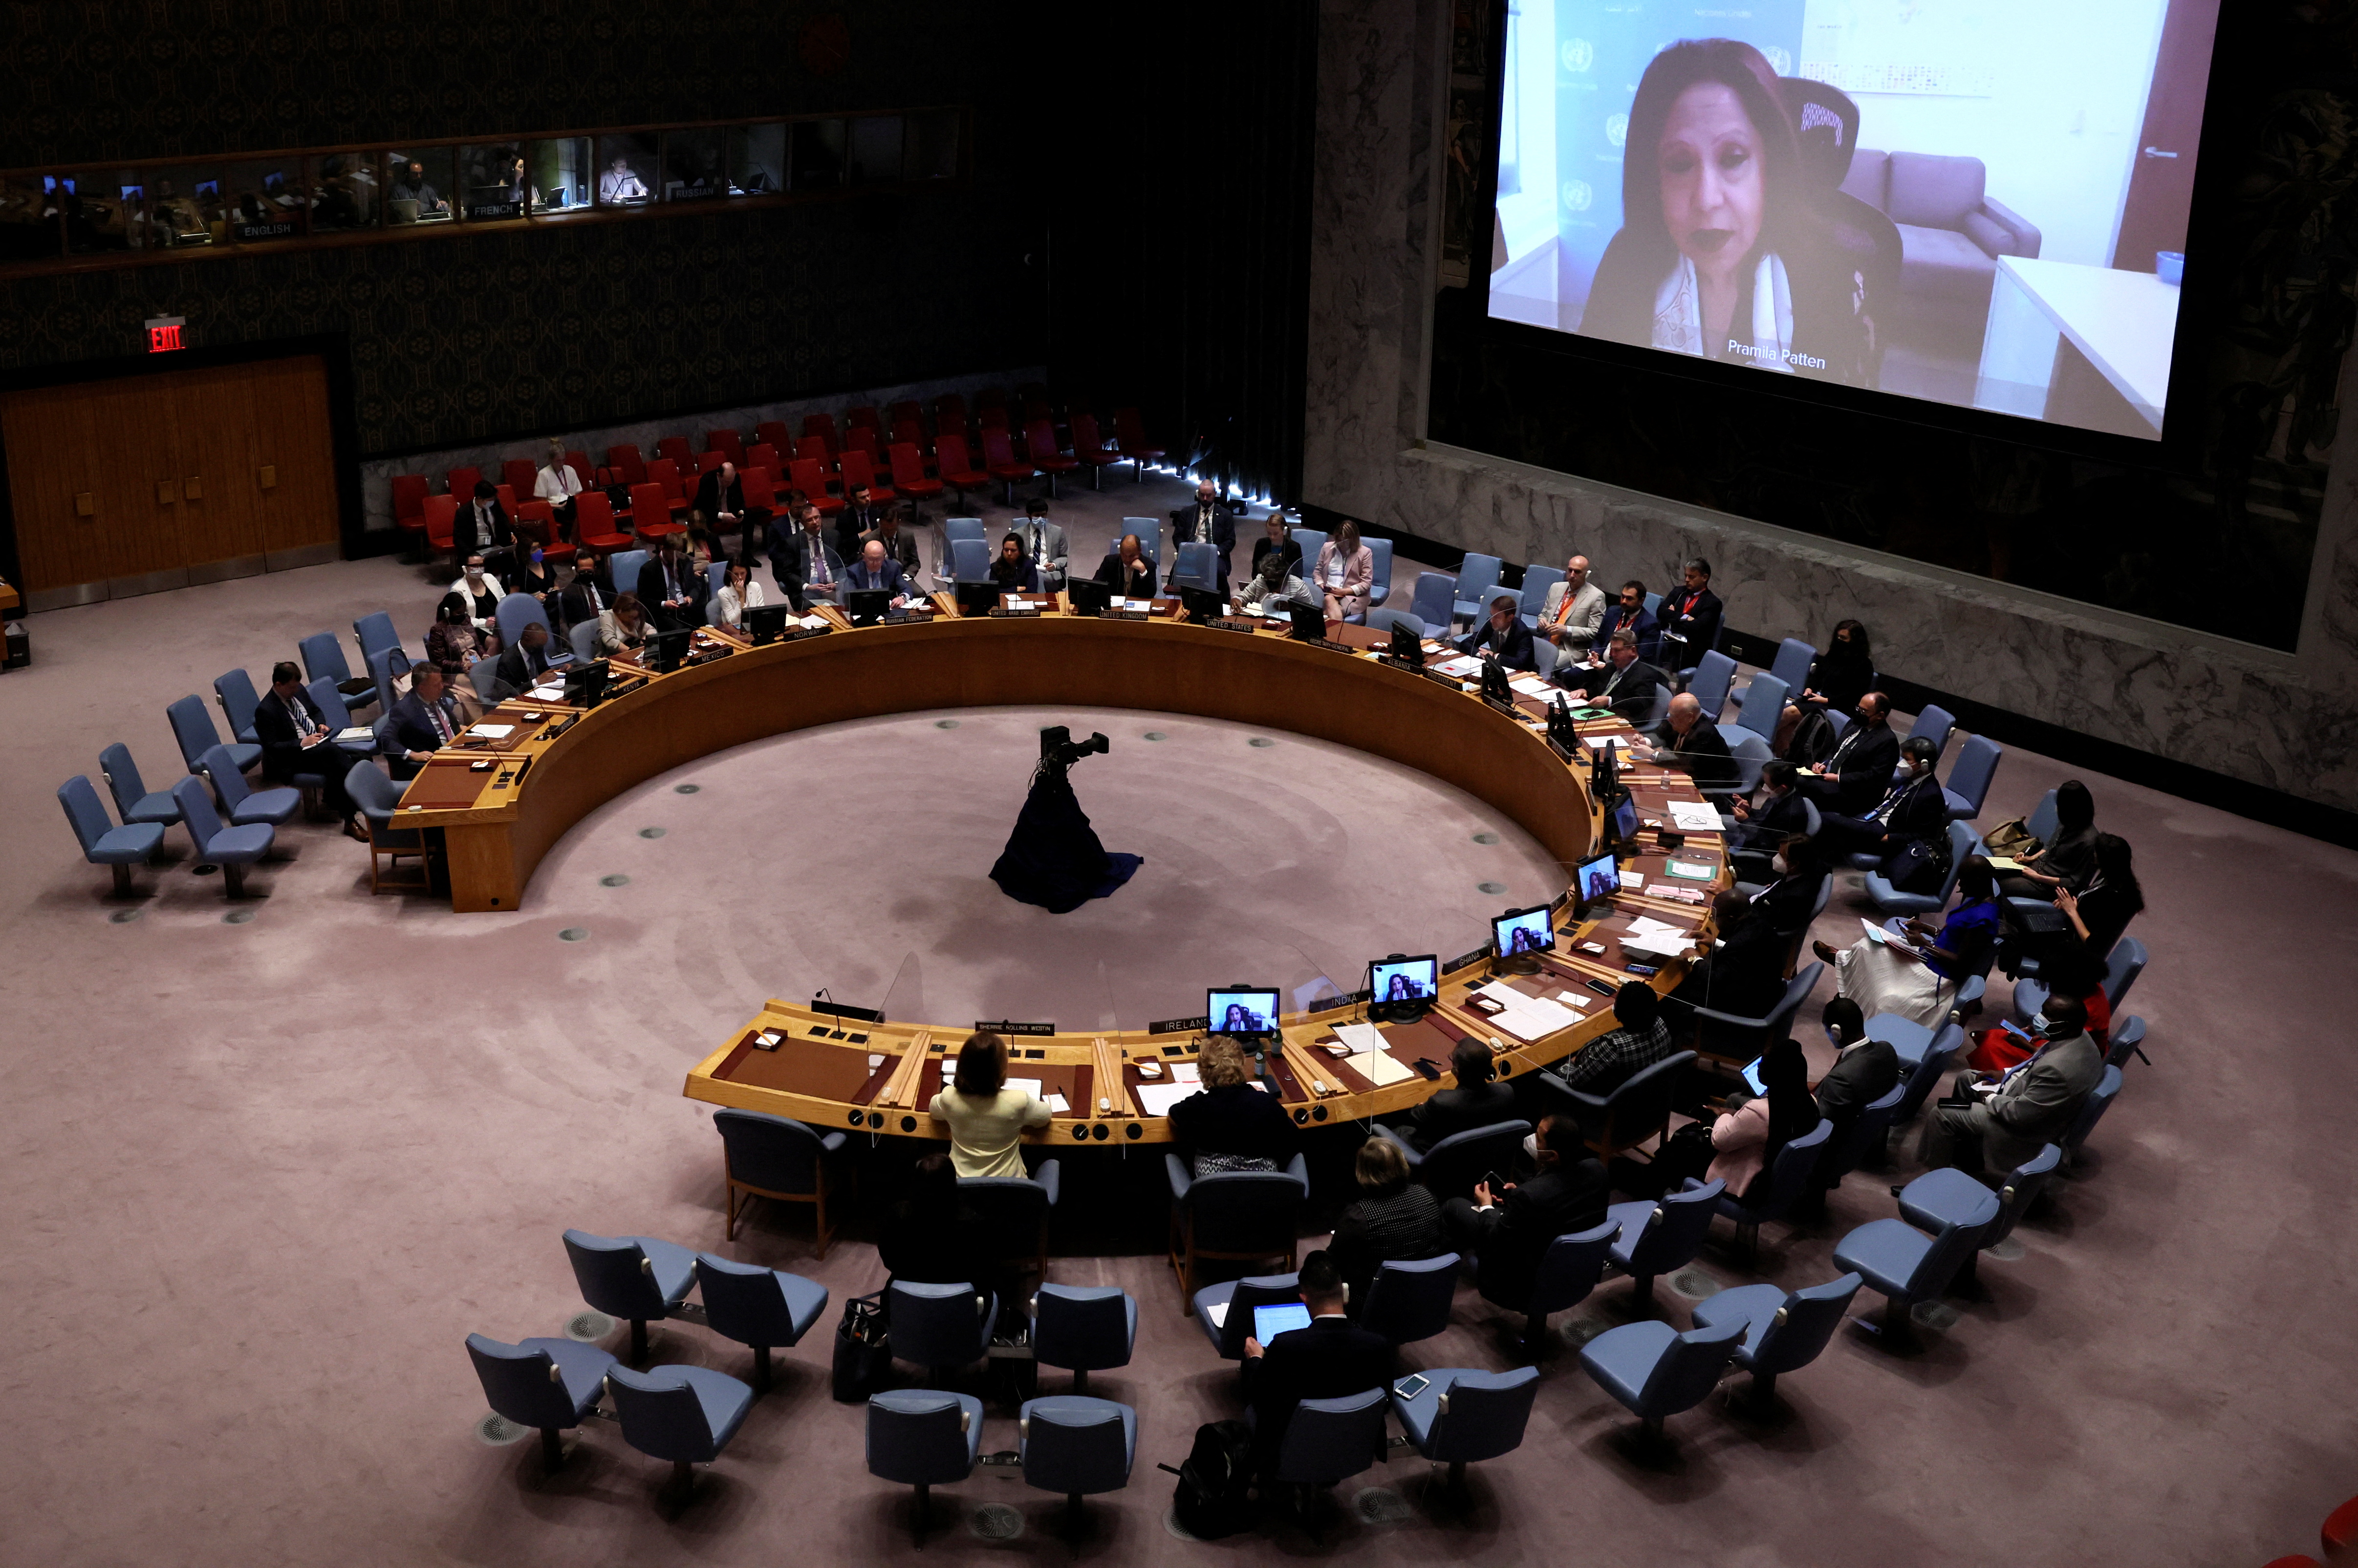 La representante especial sobre la violencia sexual en los conflictos, Pramila Patten, aparece en una pantalla de vídeo mientras se dirige a una reunión del Consejo de Seguridad de las Naciones Unidas sobre la invasión rusa de Ucrania en la sede de la ONU en Nueva York, Nueva York, Estados Unidos, el 6 de junio de 2022. REUTERS/Mike Segar